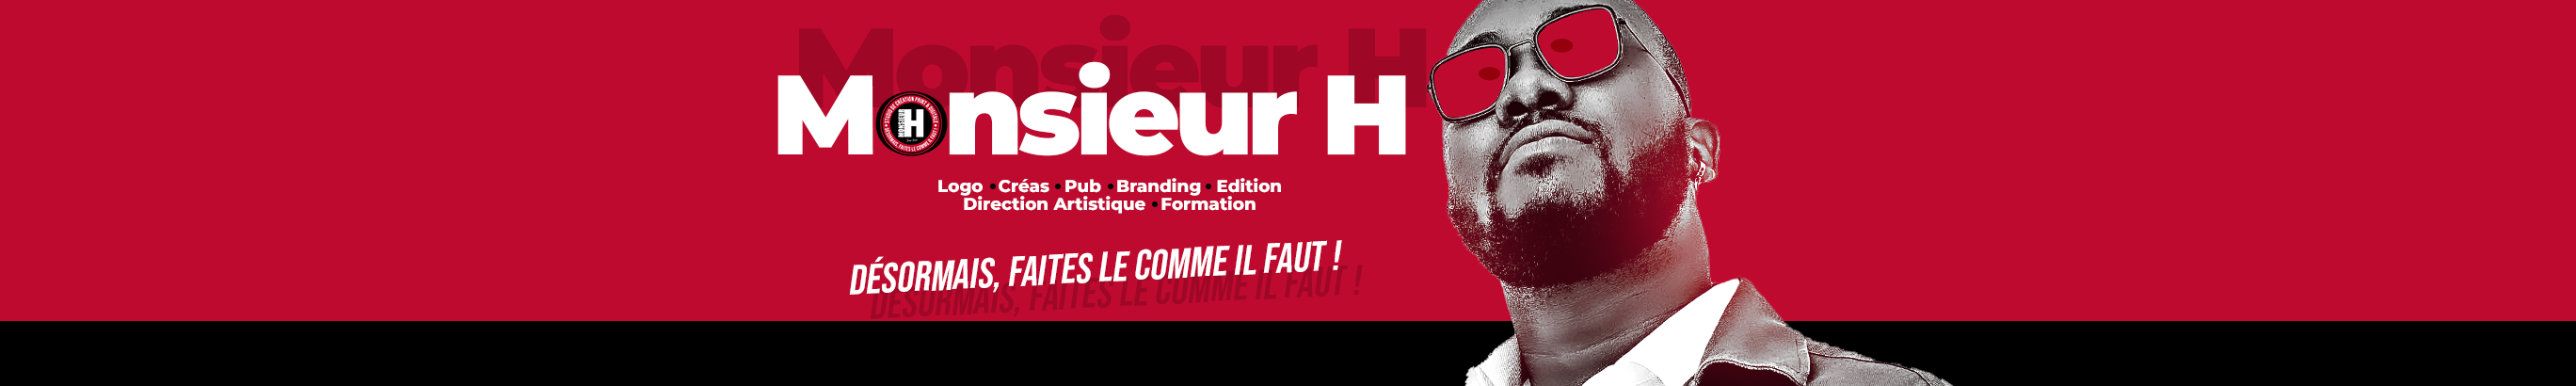 Banner de perfil de Monsieur H